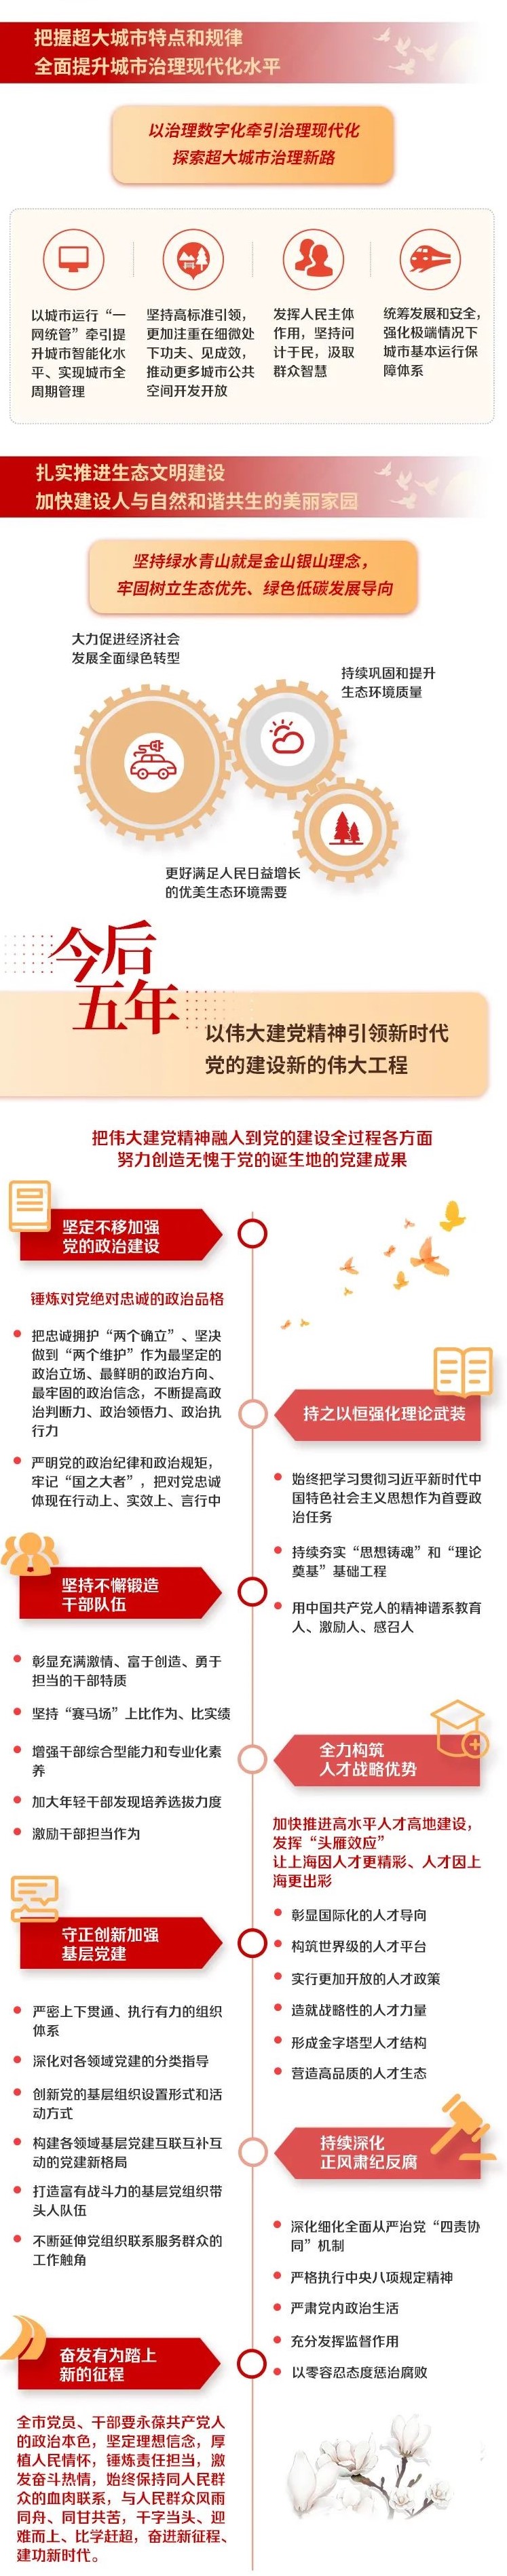 上海遴选：上海市第十二次党代会报告图解4.jpg